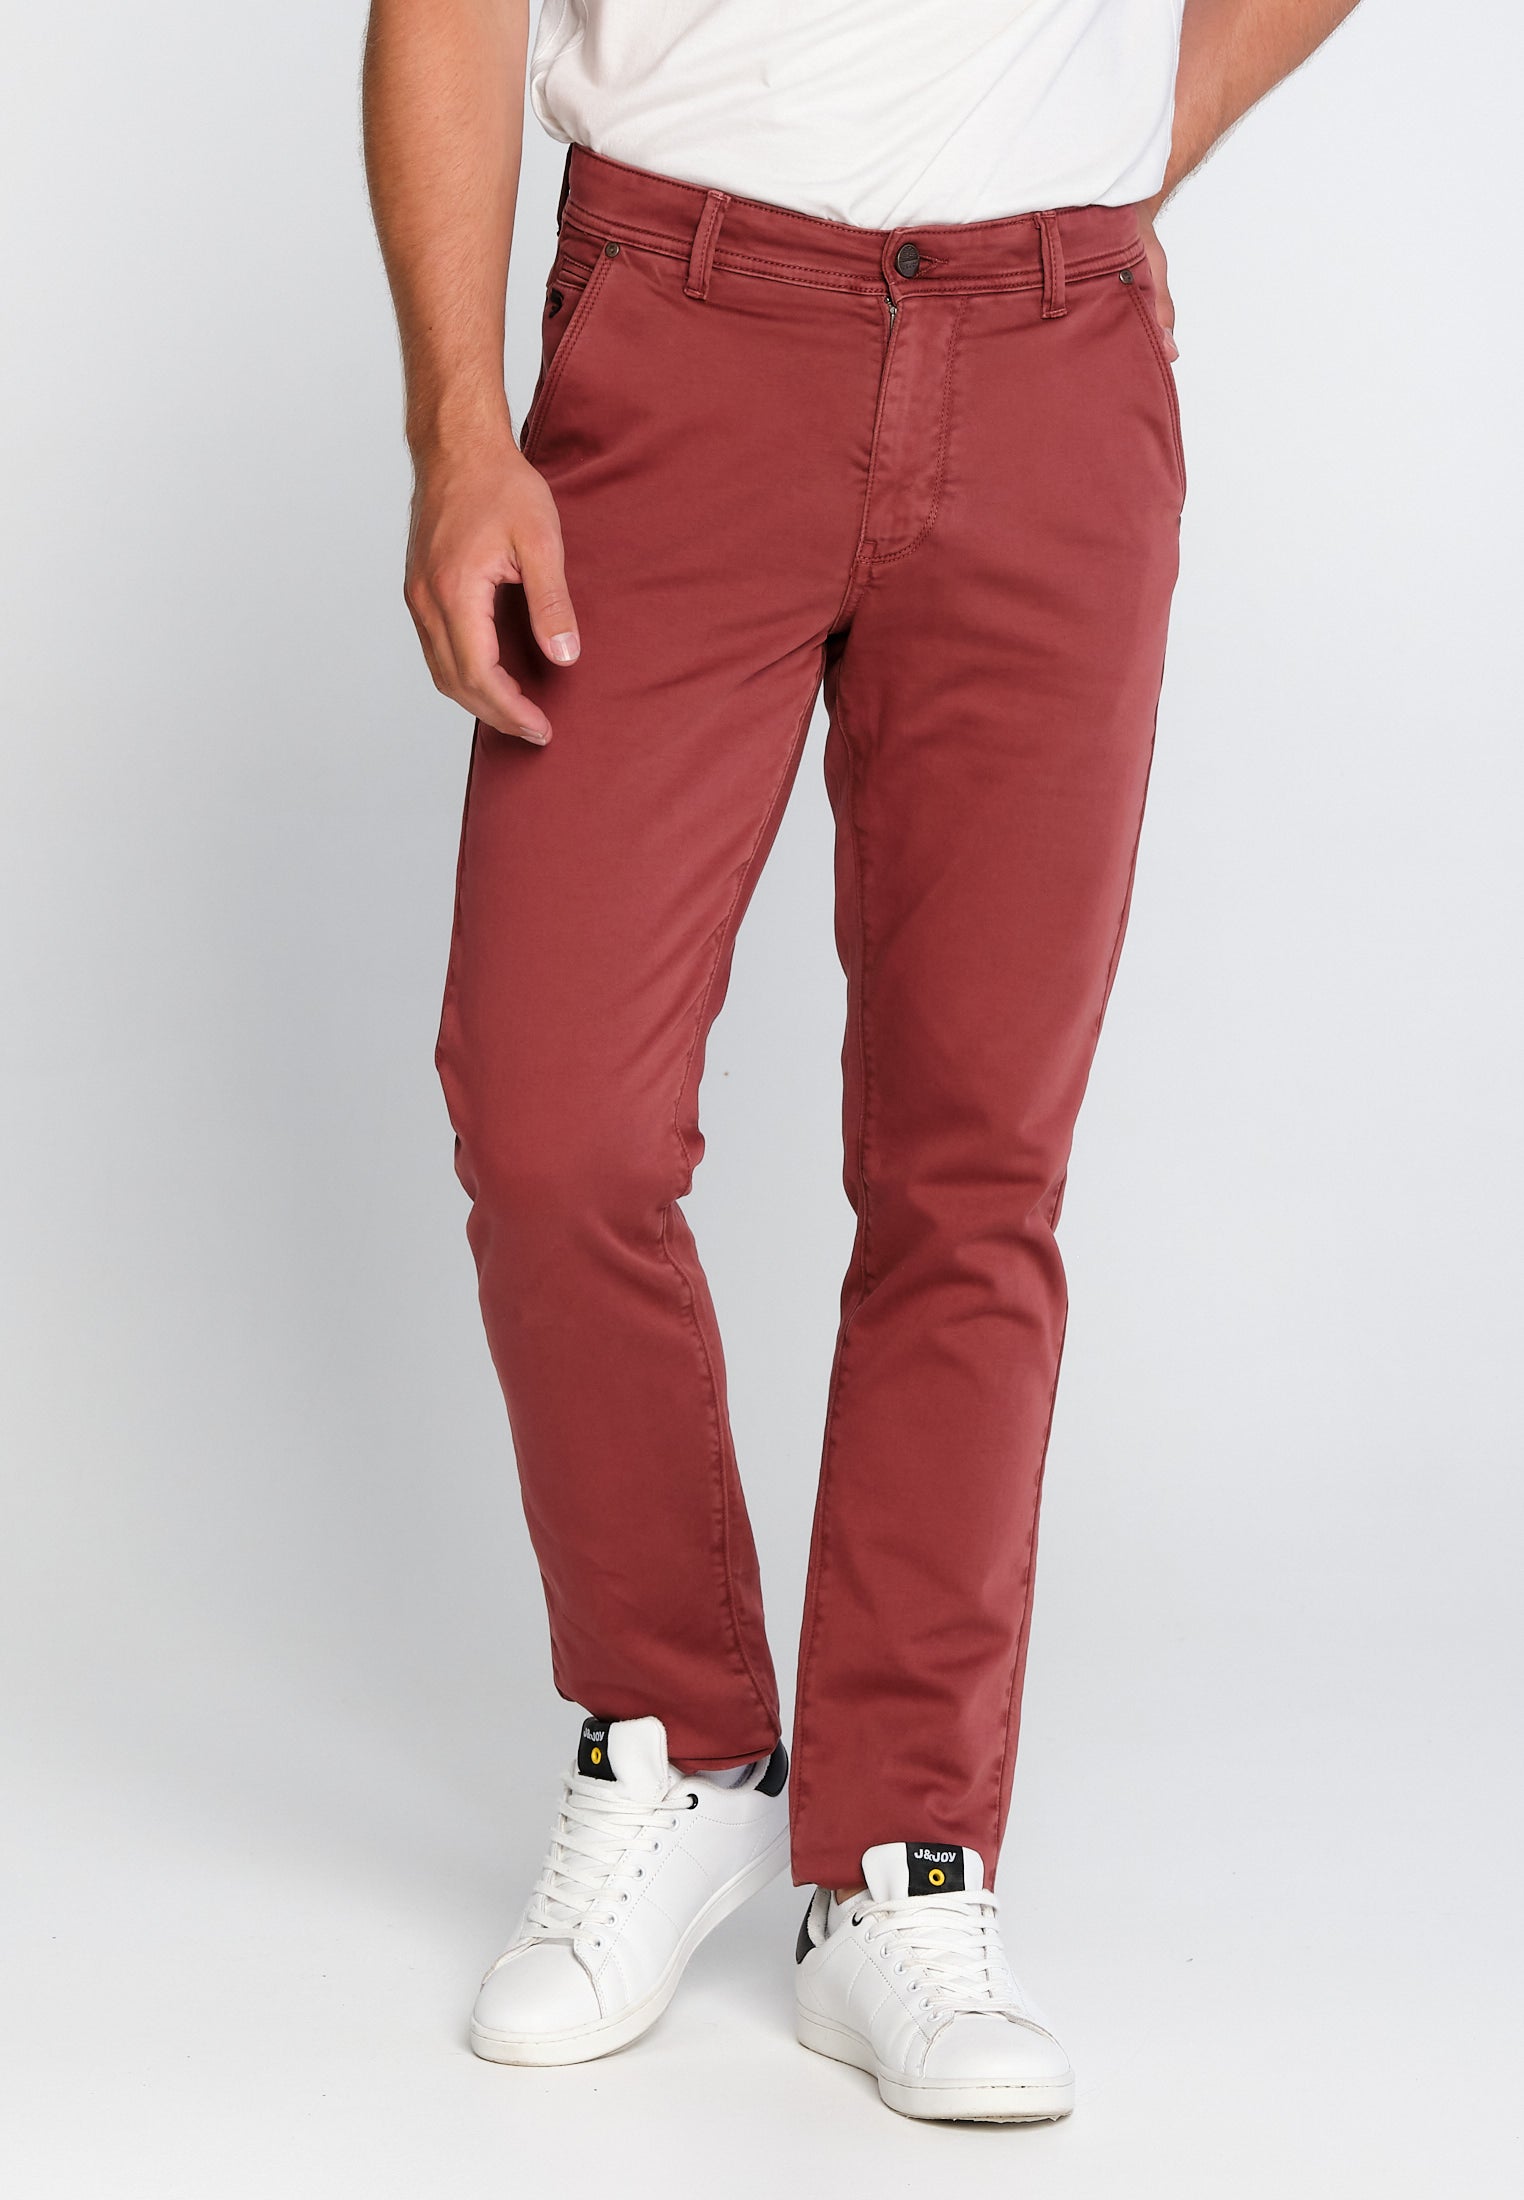 Pantalon Homme 02 Chino Red Brown | J&JOY.